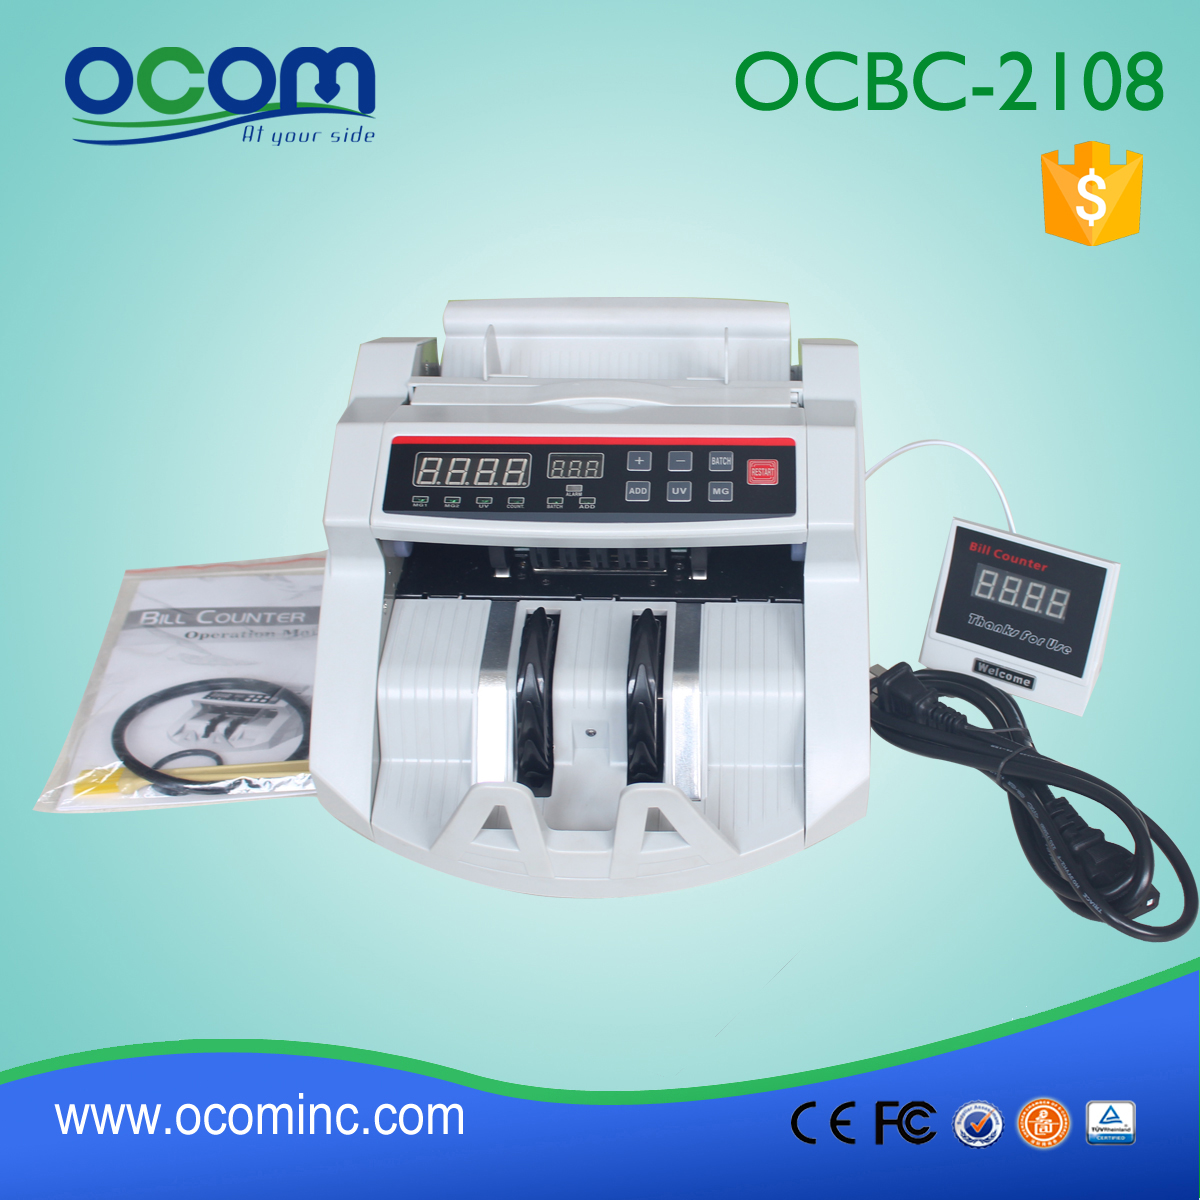 OCBC-2108低价点钞机中国制造